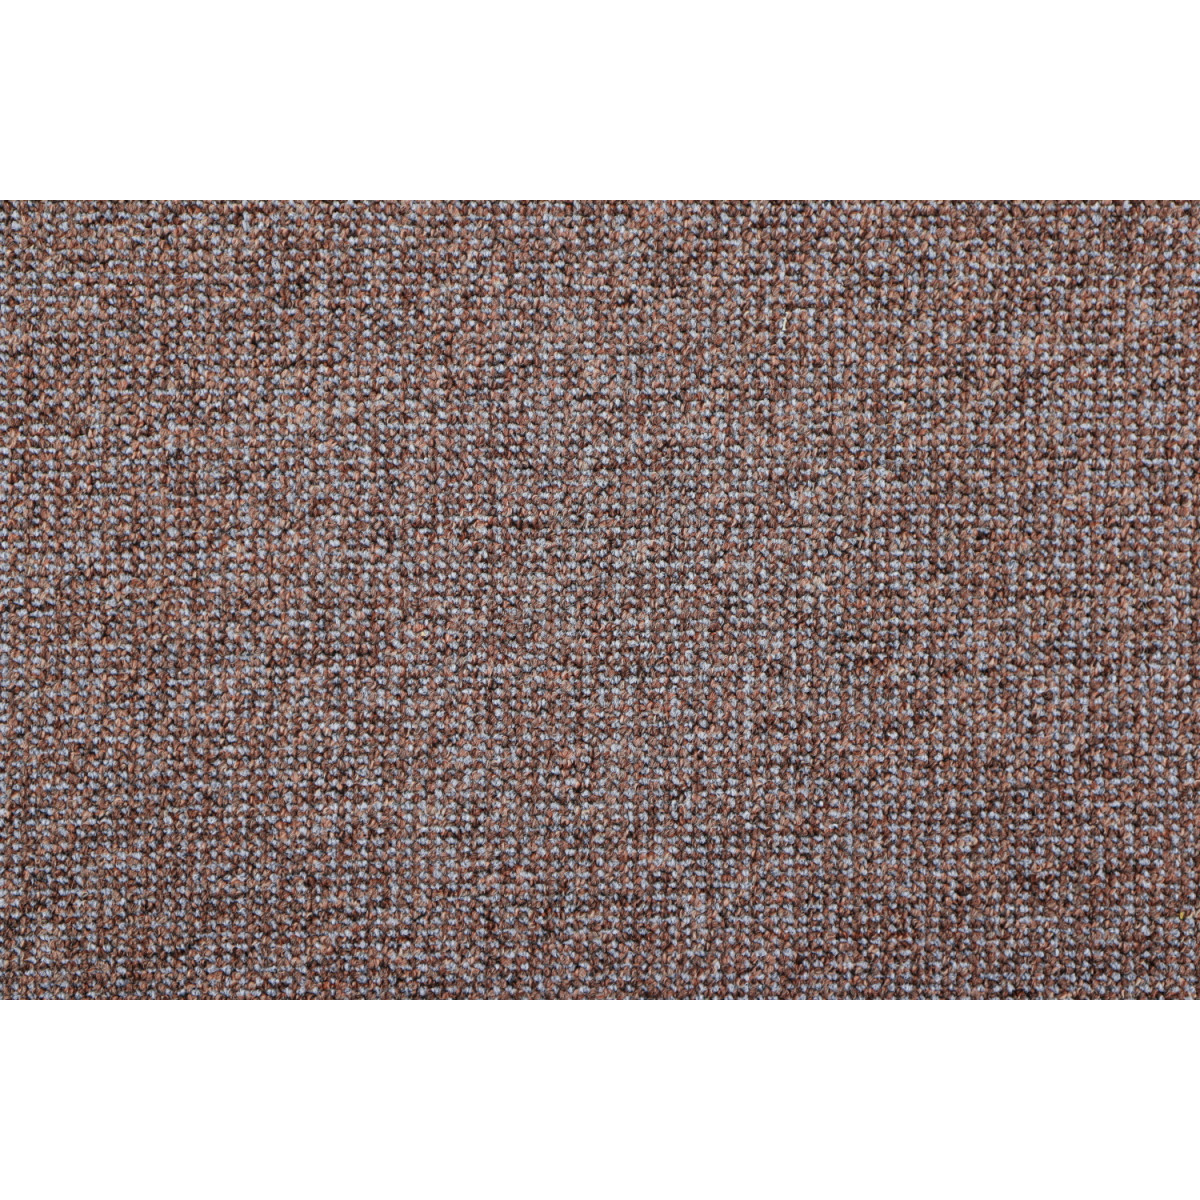 AKCE: 89x420 cm Metrážový koberec Lion 16 - neúčtujeme odřezky z role!